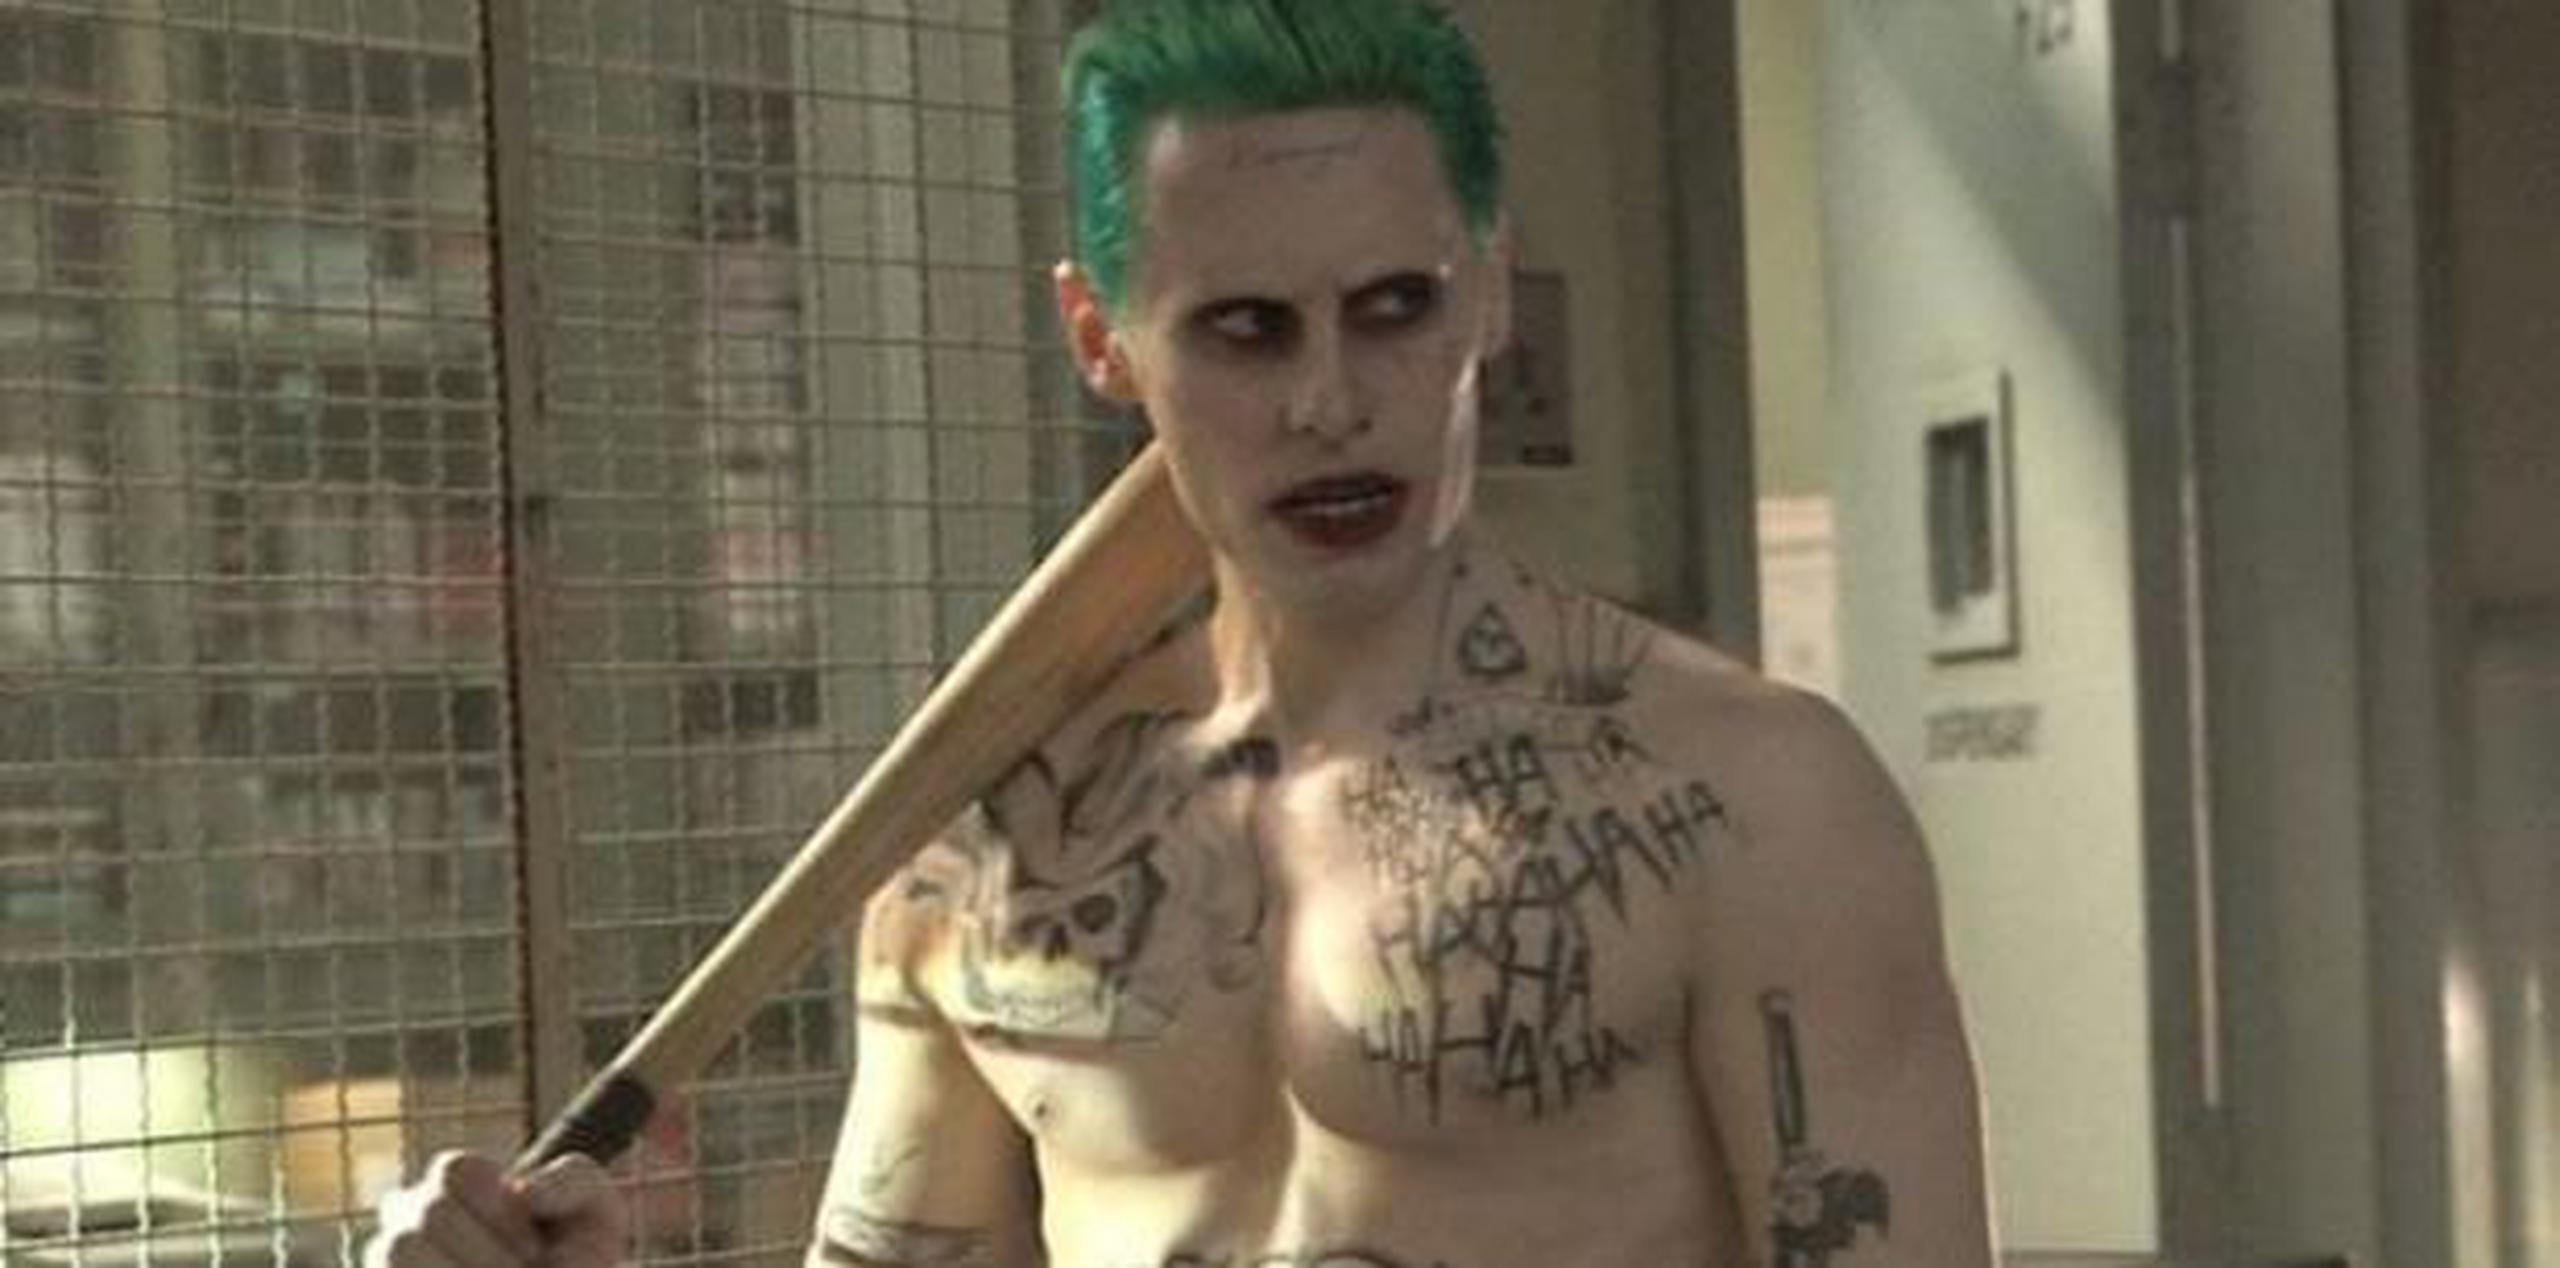 El proyecto sobre el Joker discurrirá de forma independiente al anunciado meses atrás sobre los orígenes del personaje, una cinta que prepara Todd Phillips y que supondrá un nuevo punto de partida para el universo cinematográfico de DC Comics. (Archivo)